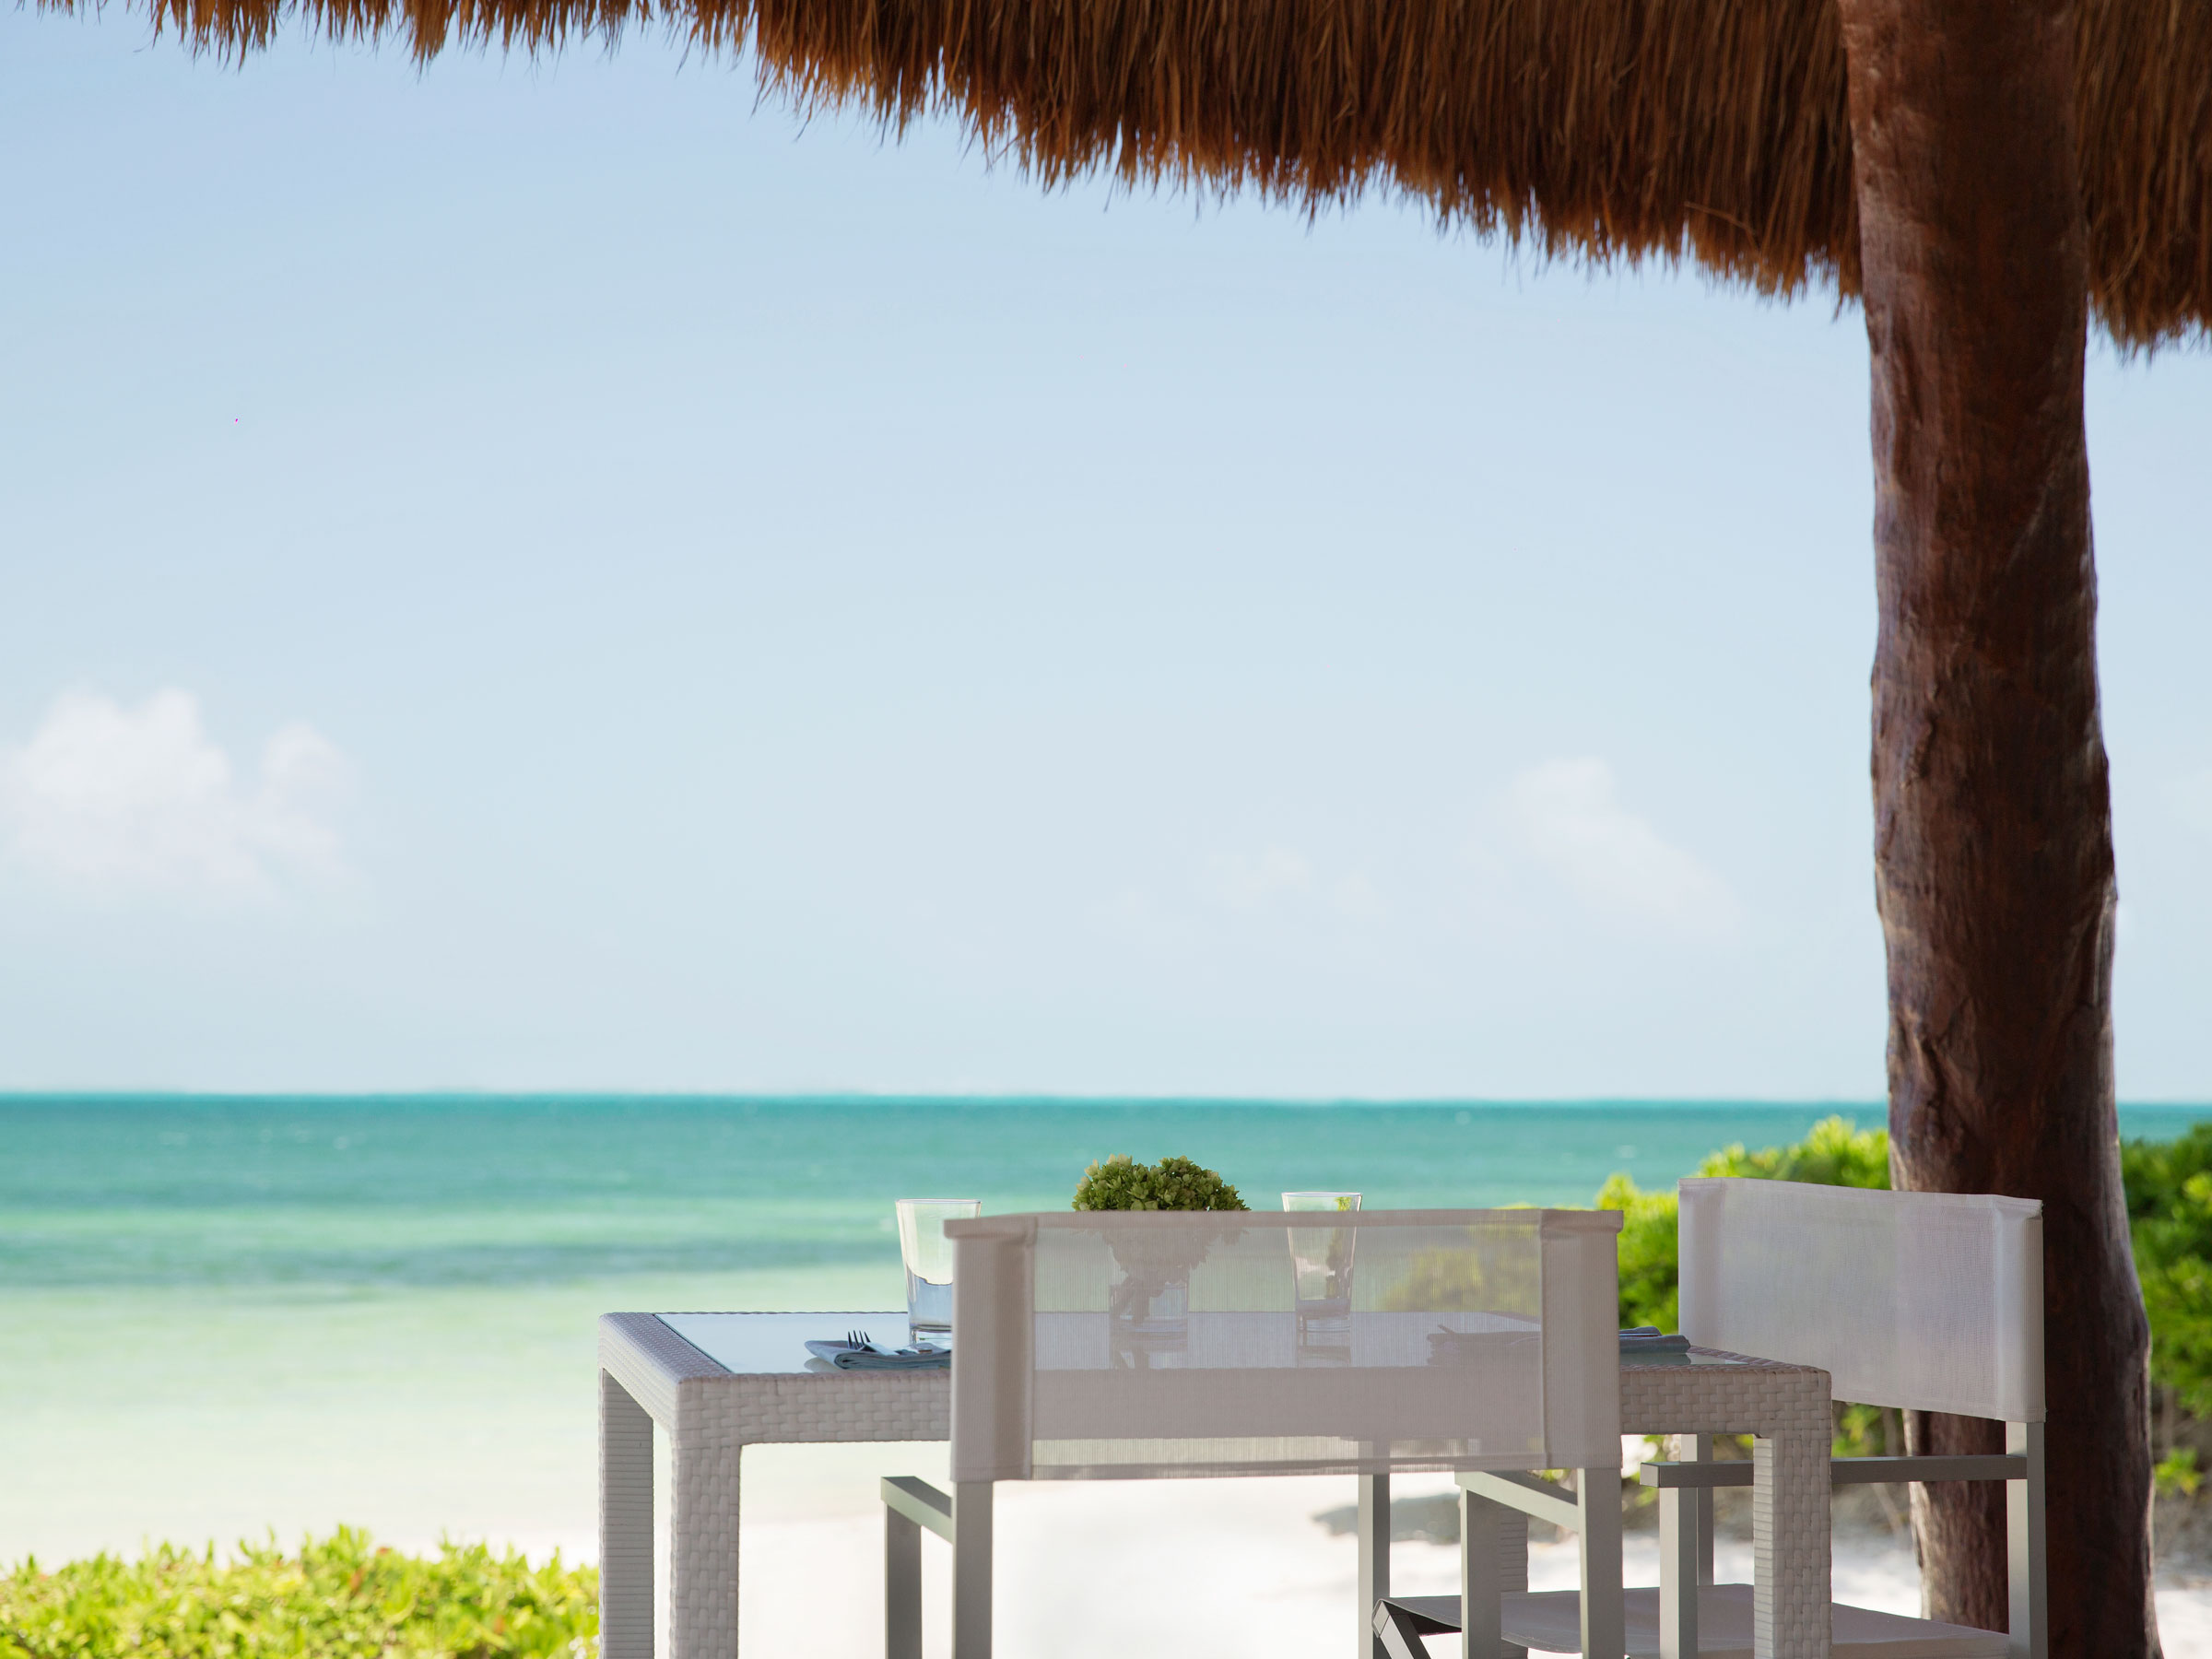 Restaurant haut de gamme avec vue sur mer à Cancun